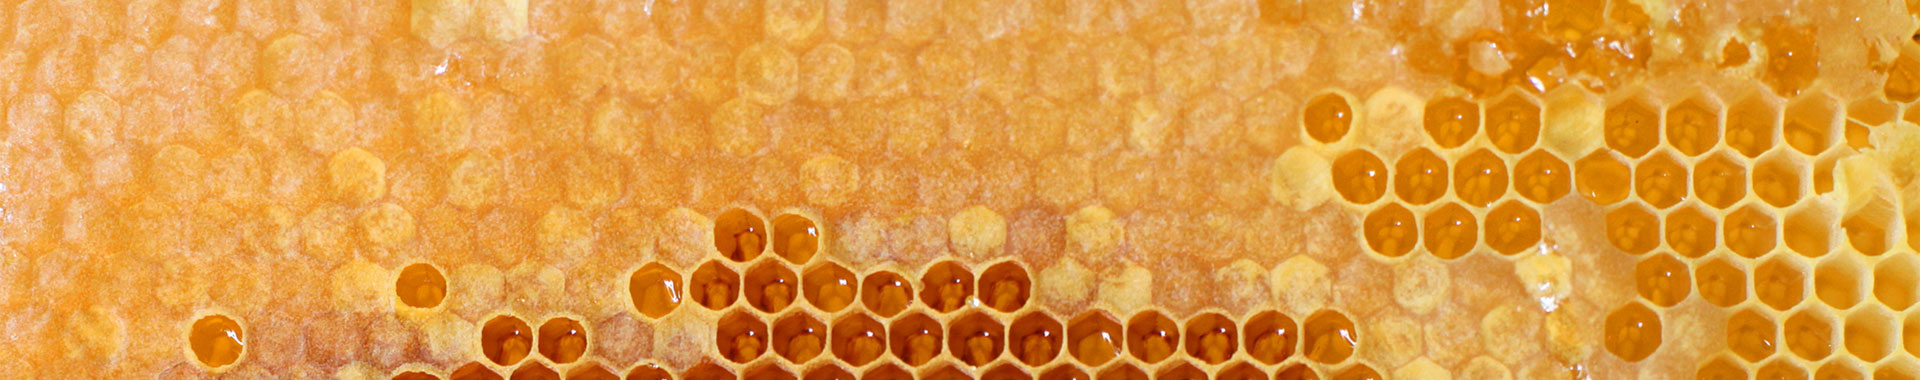 Eine Wabe voller Honig